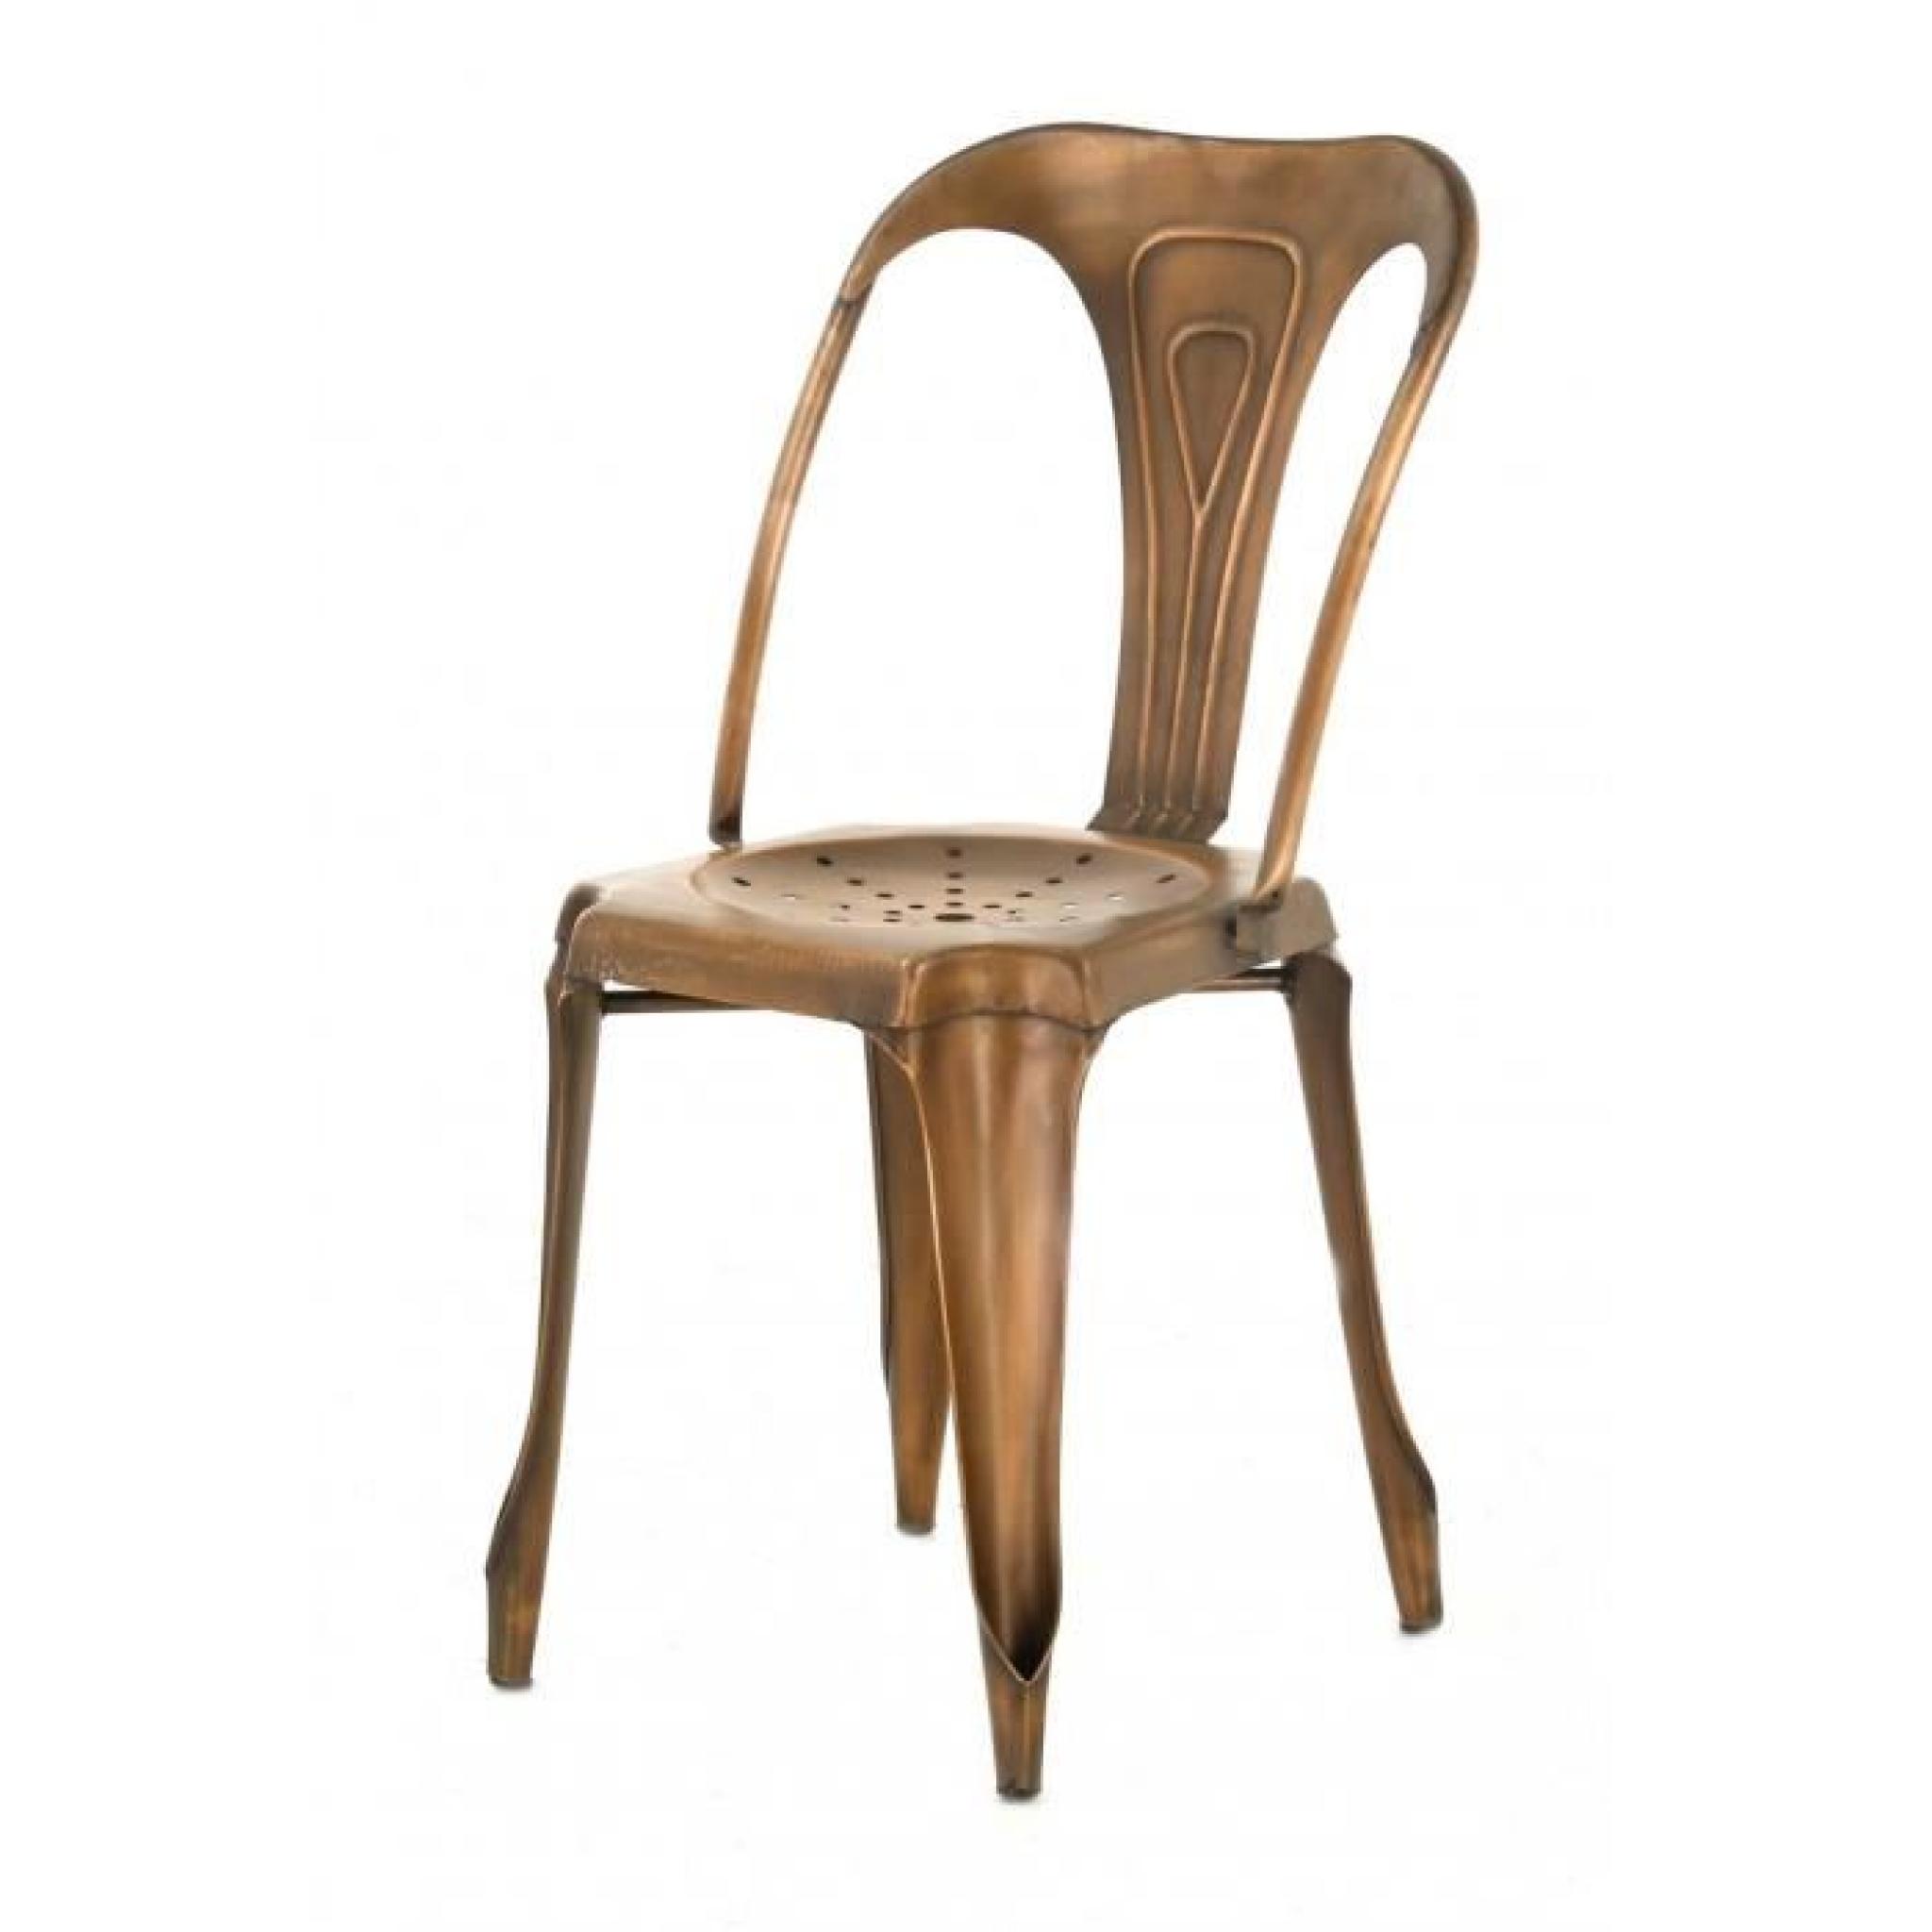 4x Chaise industrielle métal bronze Indus - Inwood pas cher